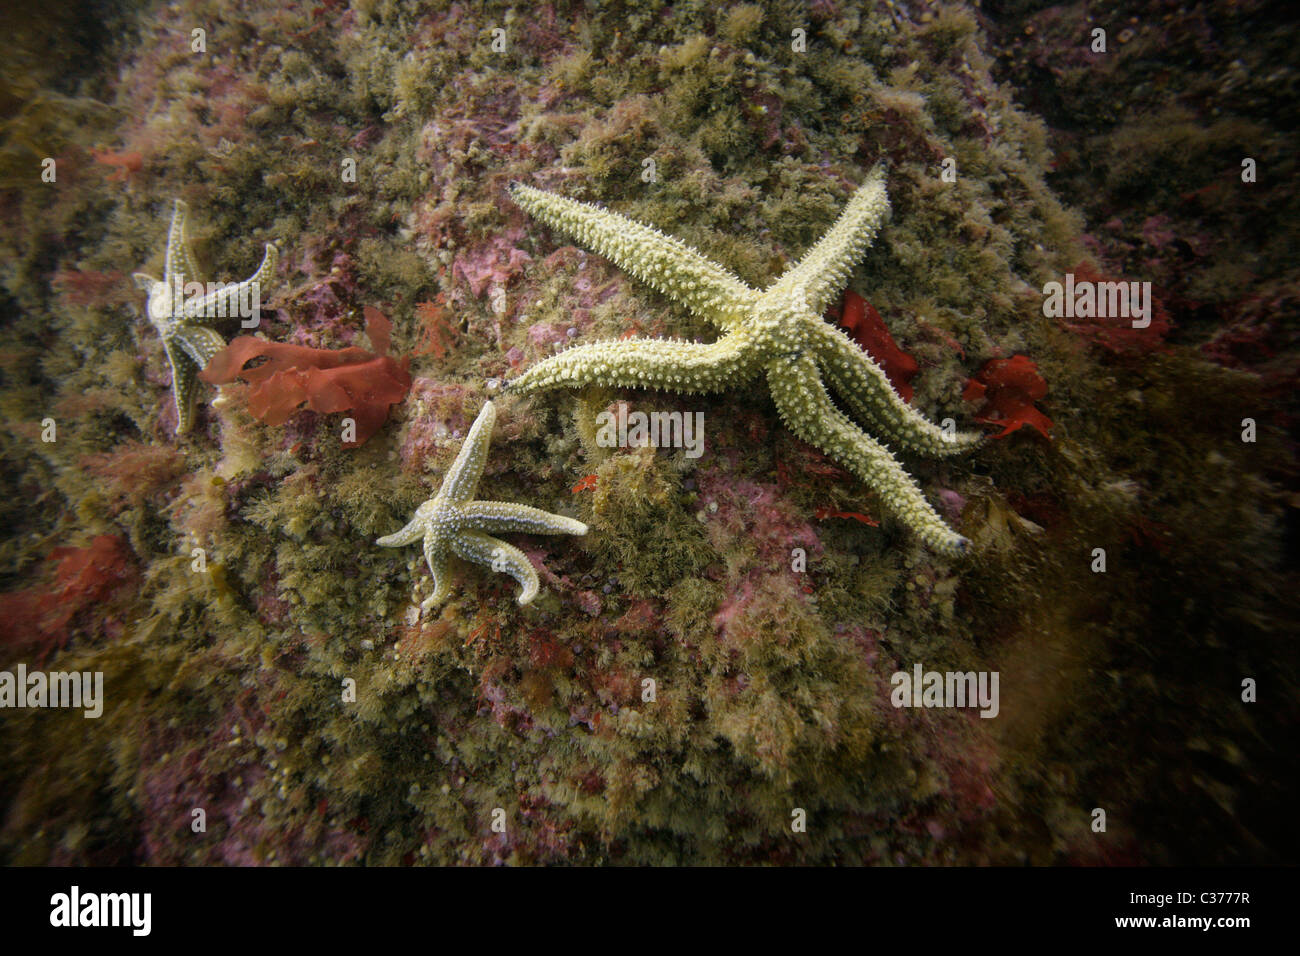 Tre comuni starfish (Asterias rubens) aggrapparsi a una roccia nelle acque dell'Oceano Atlantico nelle Ebridi Esterne della Scozia. Foto Stock